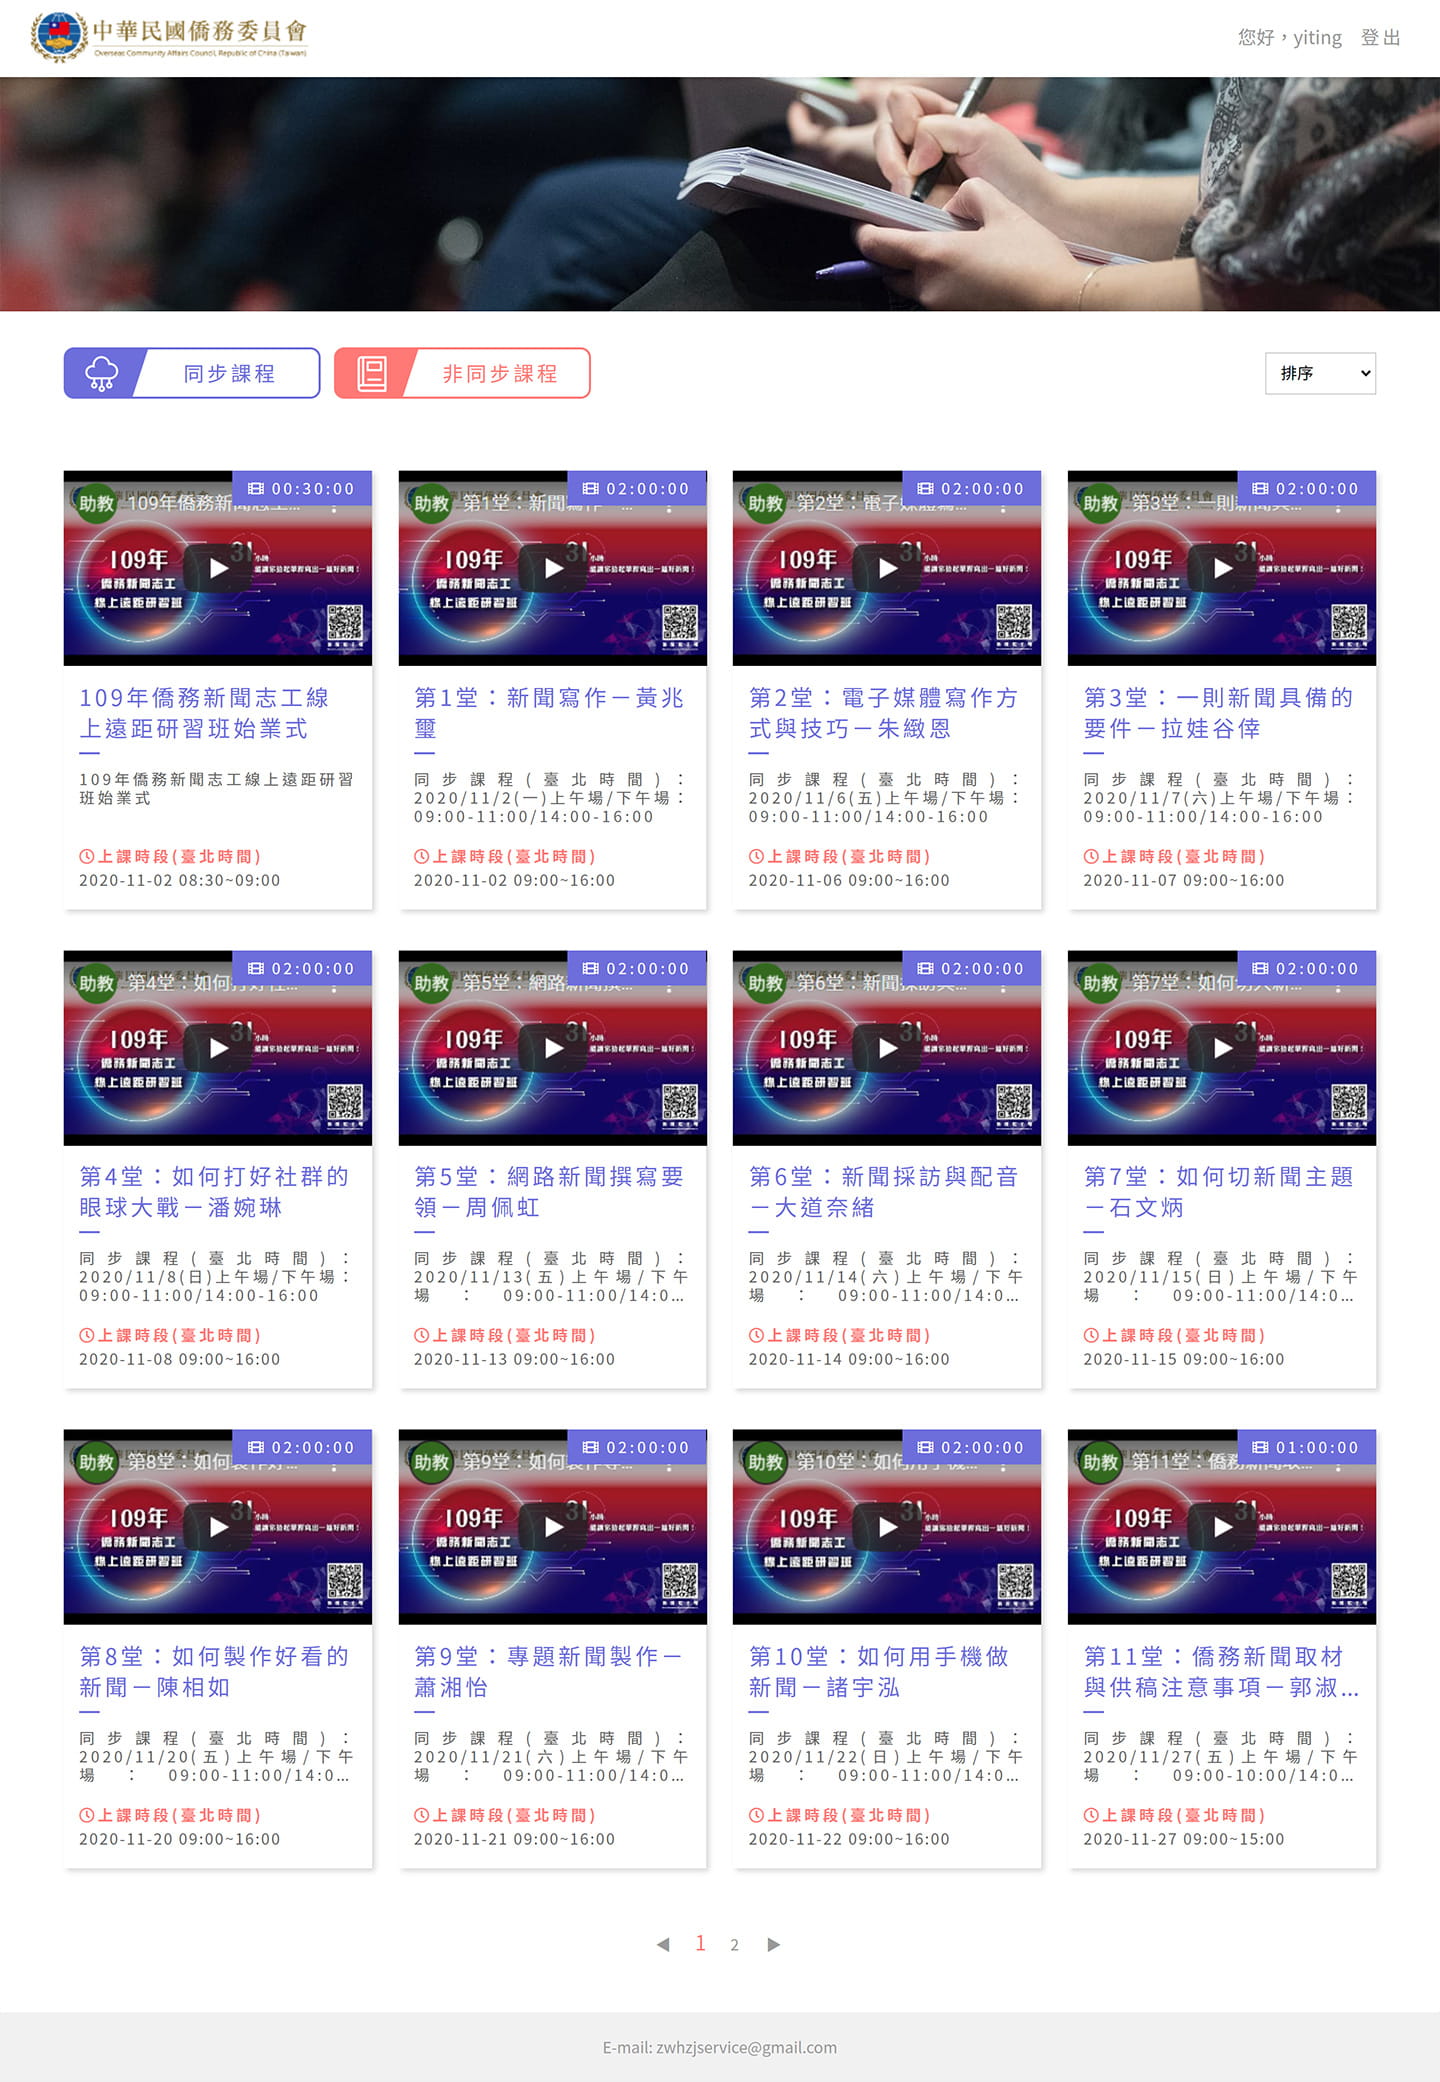 臺北醫學大學 創新創業輔導整合雲端平台首頁展示